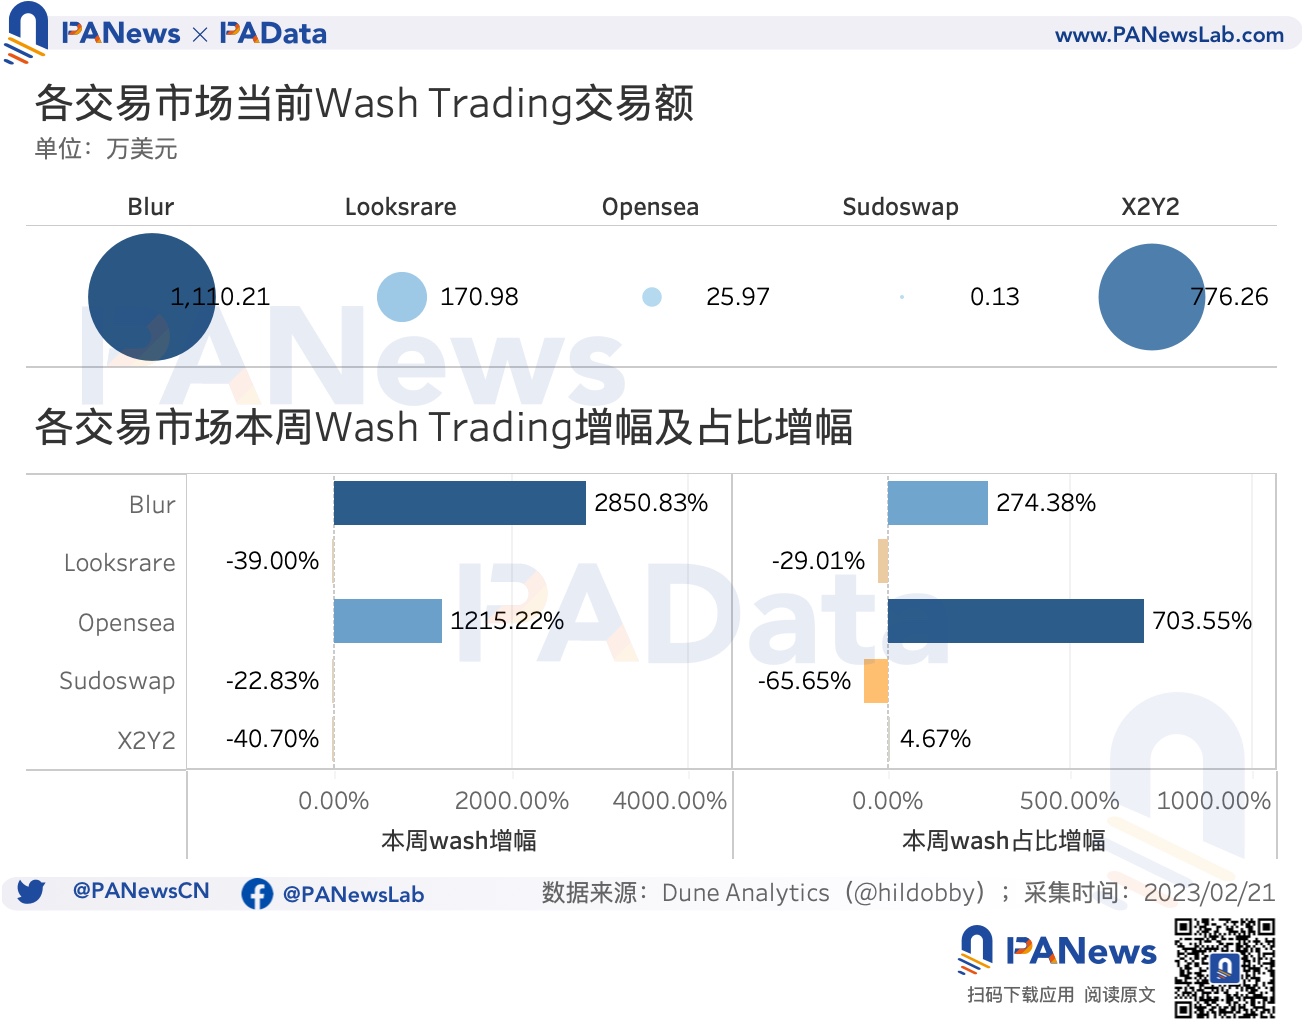 數據透析Blur交易大戰：地板價較Opensea低5%，高積分用戶當前預估營收為負